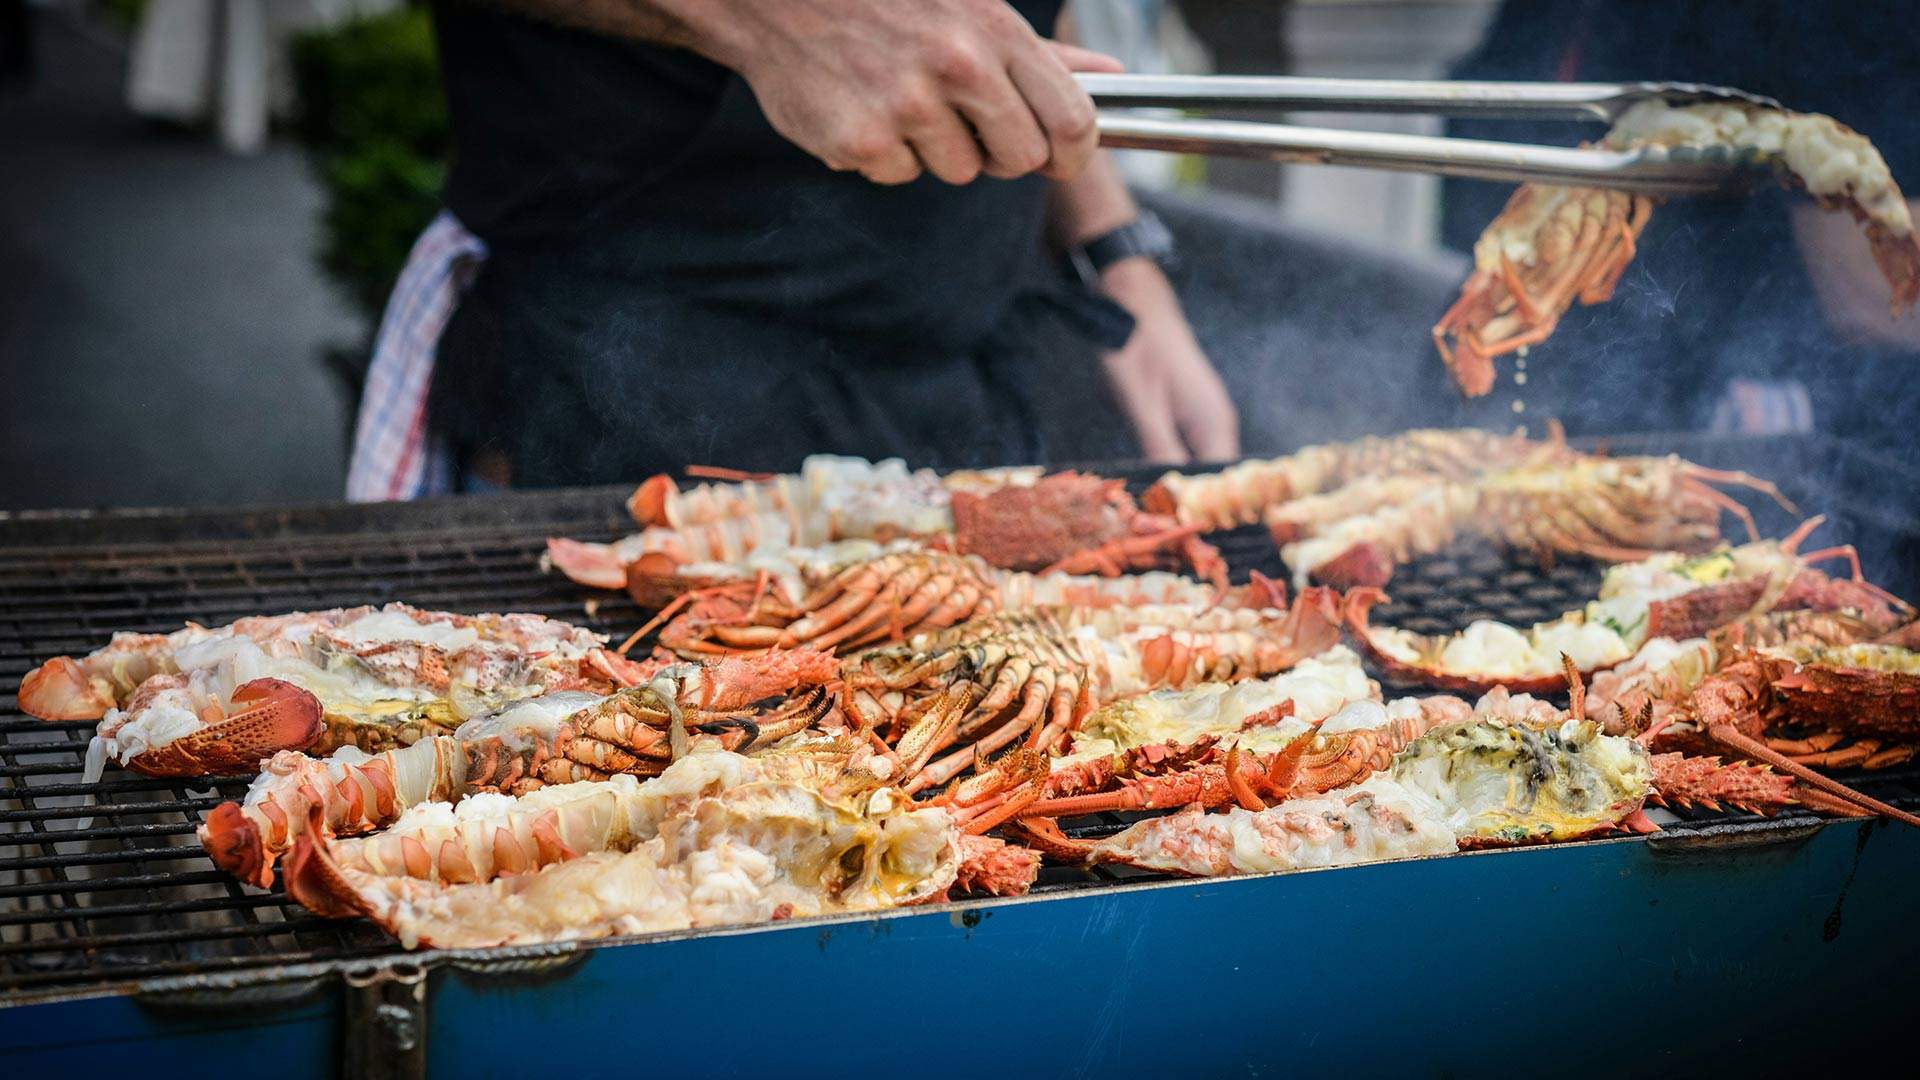 Wynnum Manly Seafood Festival